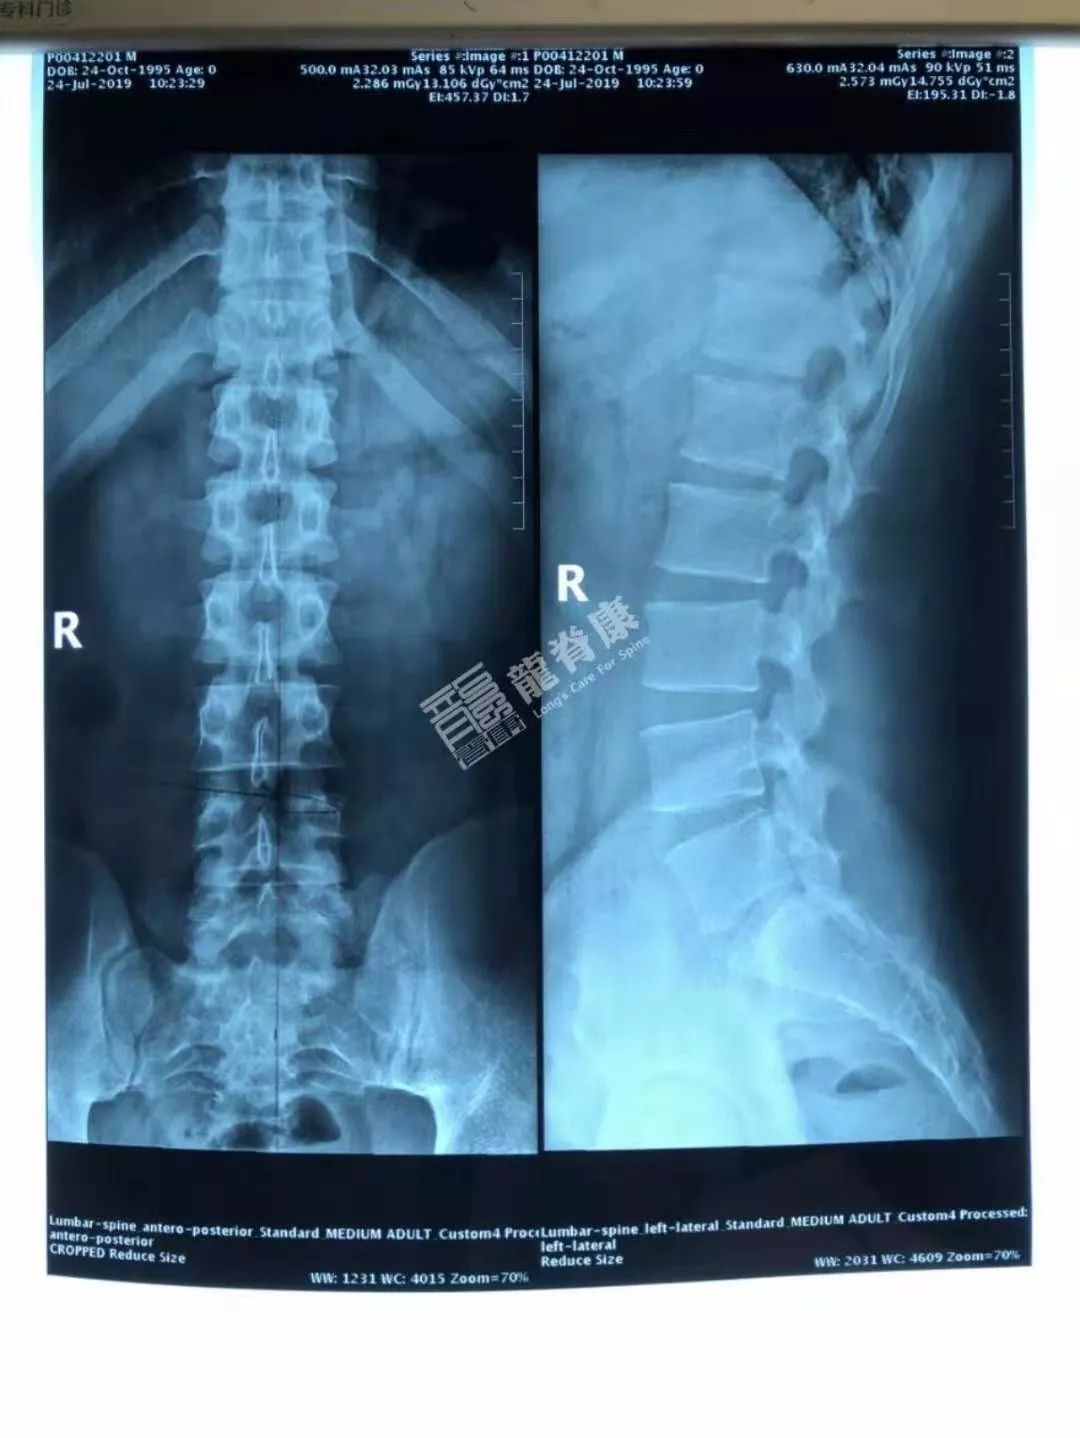 片子示:腰椎多棘突偏歪,l4/5椎间隙稍变窄,骶椎腰化,左横突与骶骨